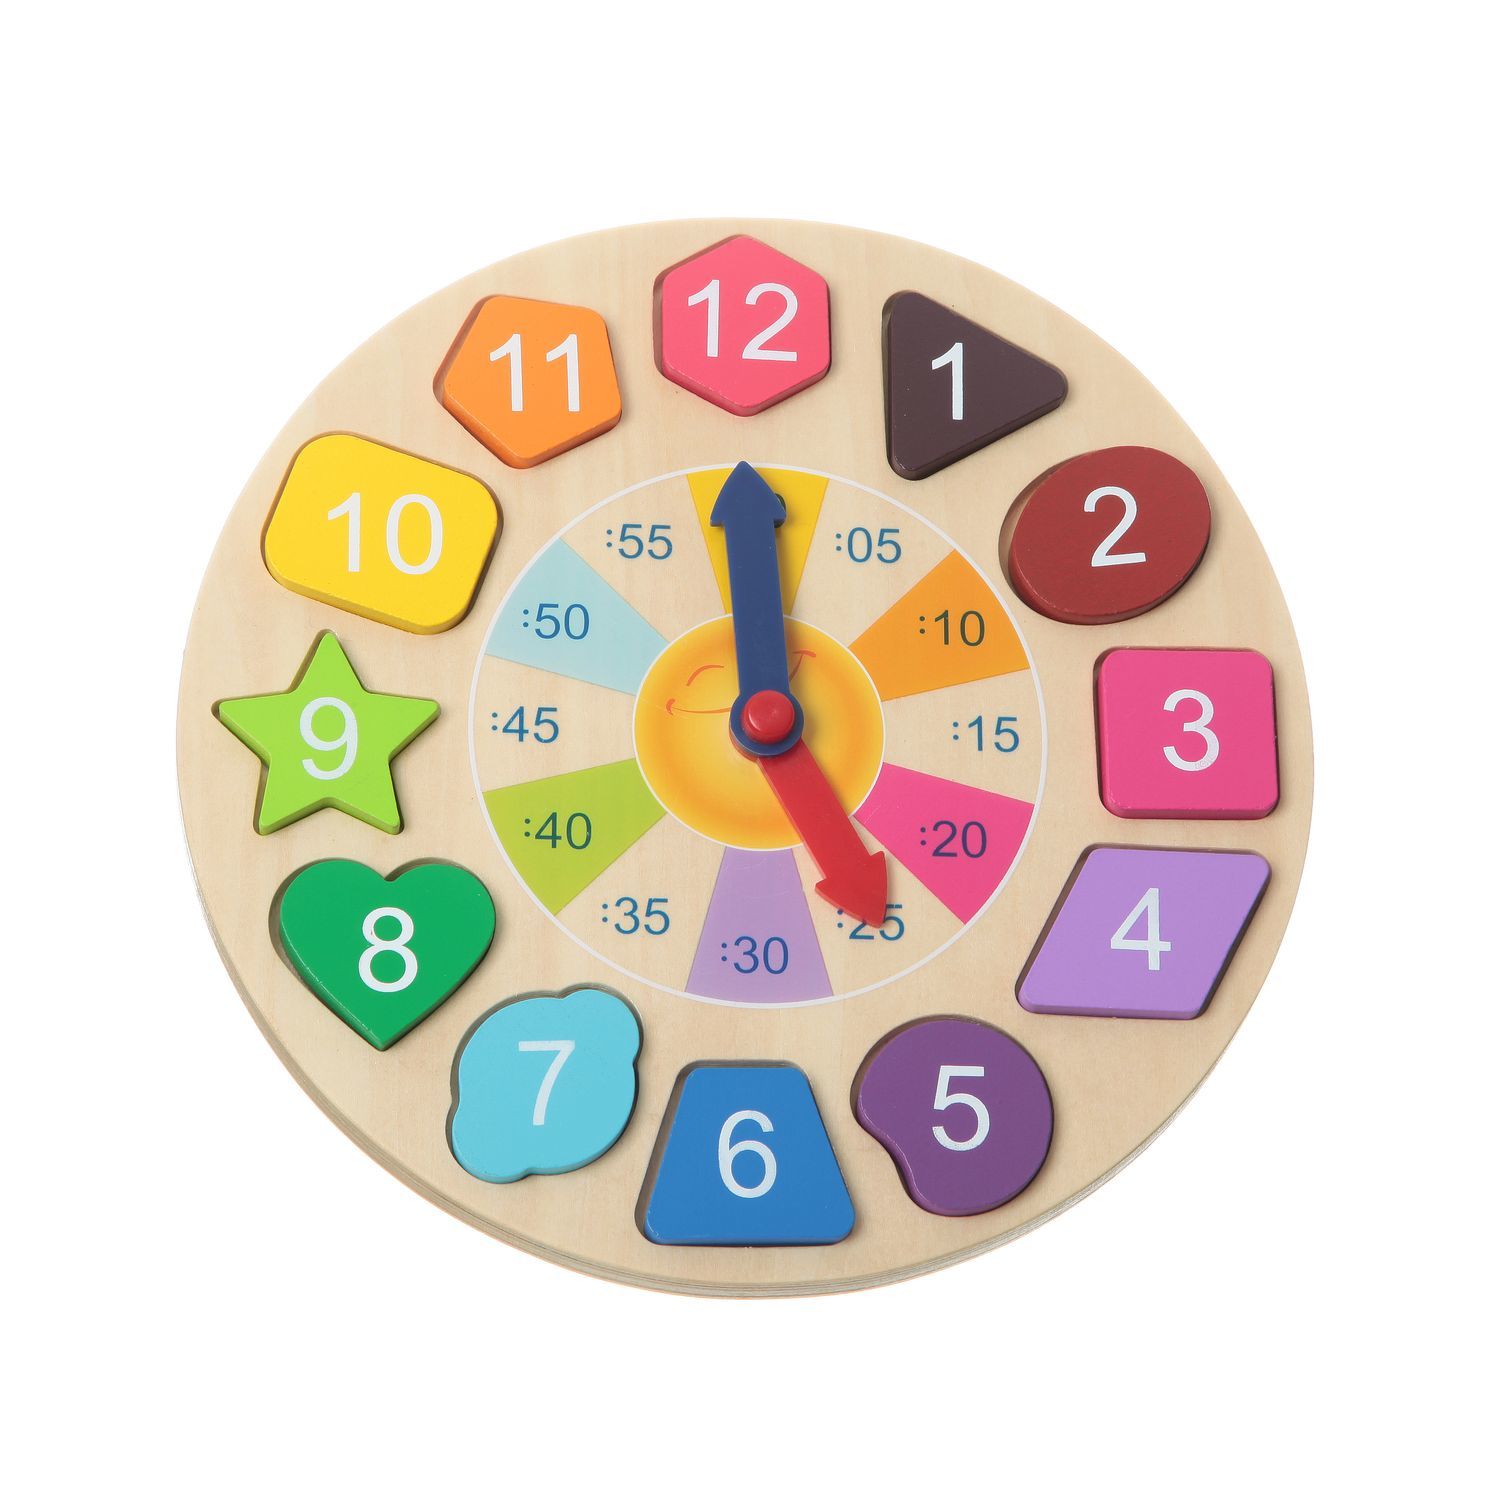 Игра с часами для детей. Чудо часики Бондибон. Часы обучающие для детей. Игрушечные часы. Модель часов для детей.